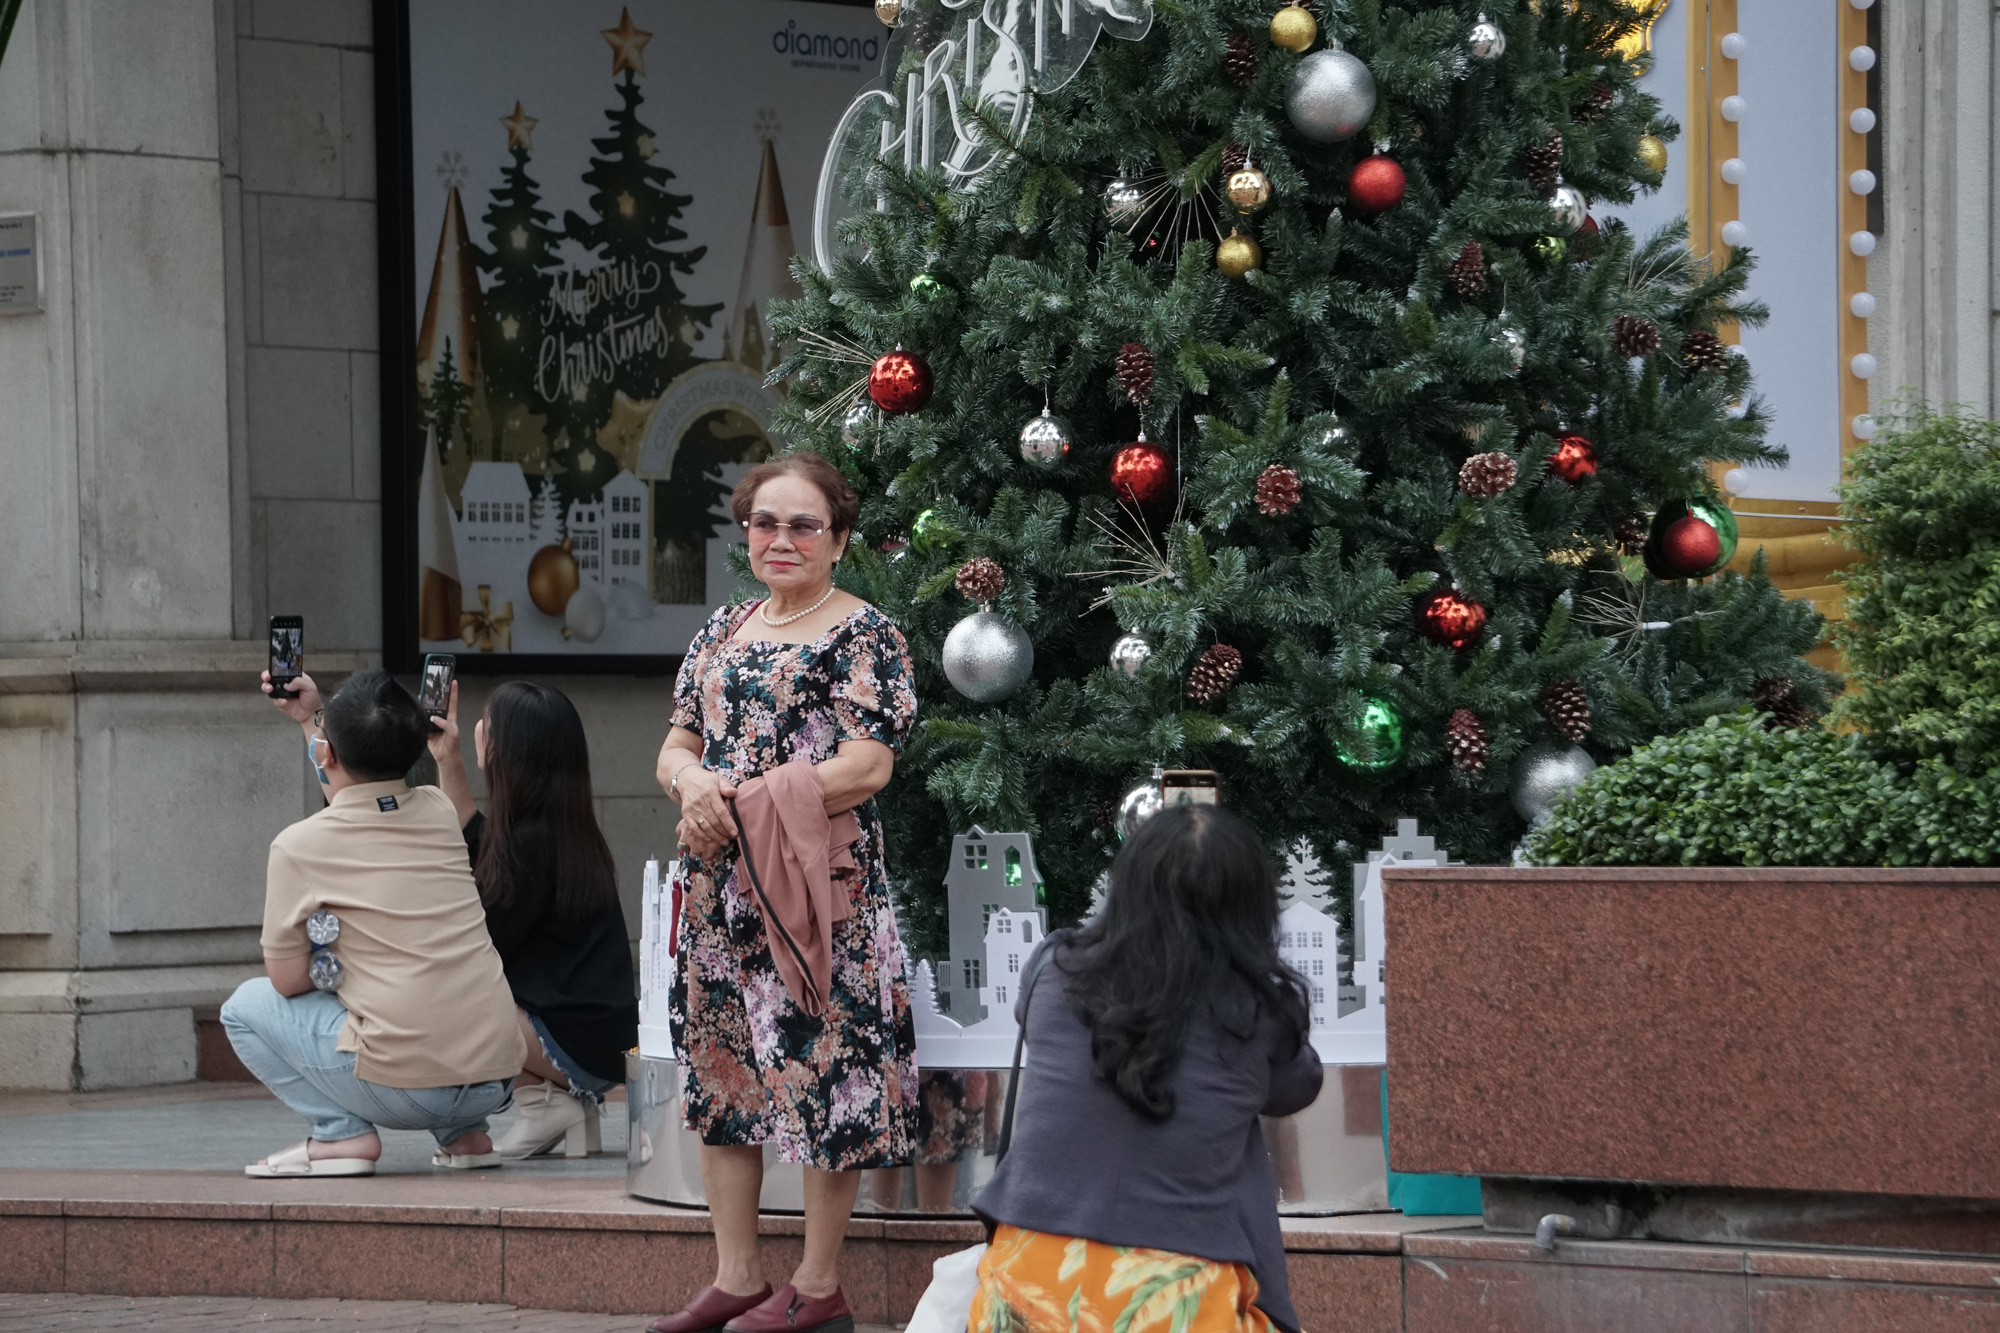 Hòa vào không khí Giáng sinh, đường phố Sài Gòn được trang trí bằng những gam màu rực rỡ, tạo nên một khung cảnh đẹp và phấn khích. Những đèn lấp lánh, những cây thông lớn được trang trí đầy màu sắc, thu hút mọi ánh nhìn. Hãy xem hình ảnh để cảm nhận sự náo nức của Giáng sinh trên đường phố Sài Gòn.